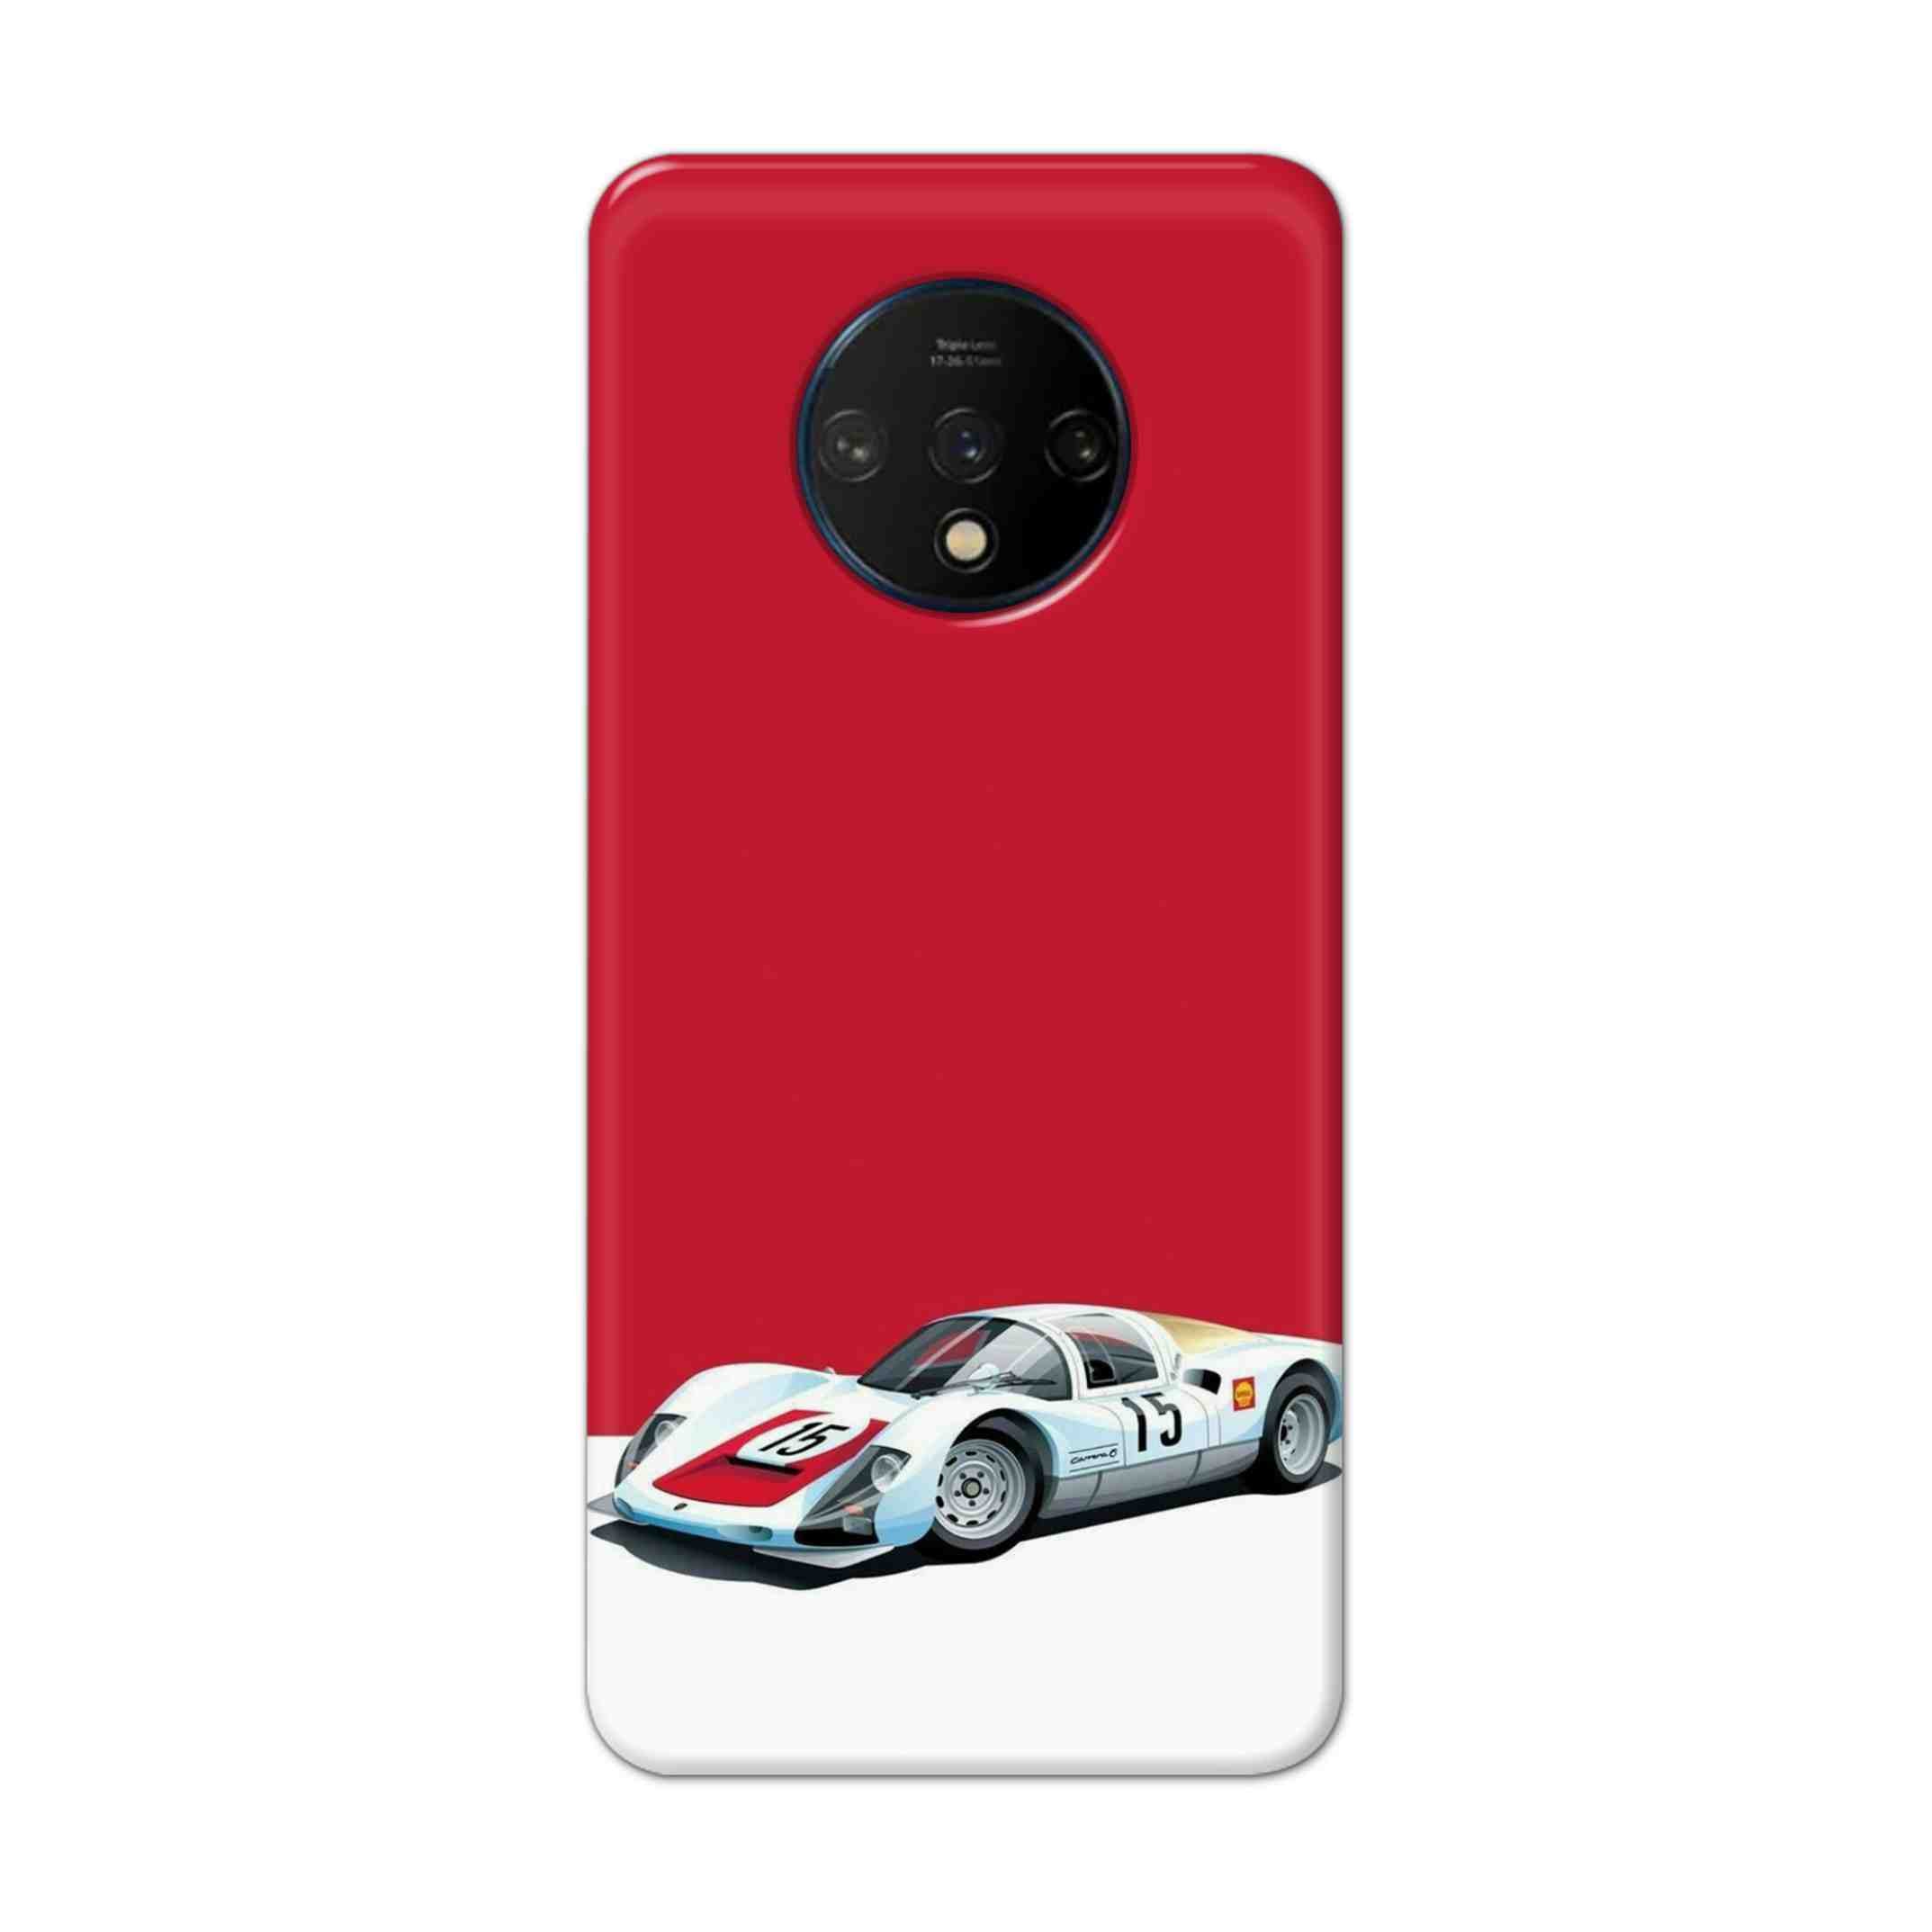 Buy Ferrari F15 Hard Back Mobile Phone Case Cover For OnePlus 7T Online